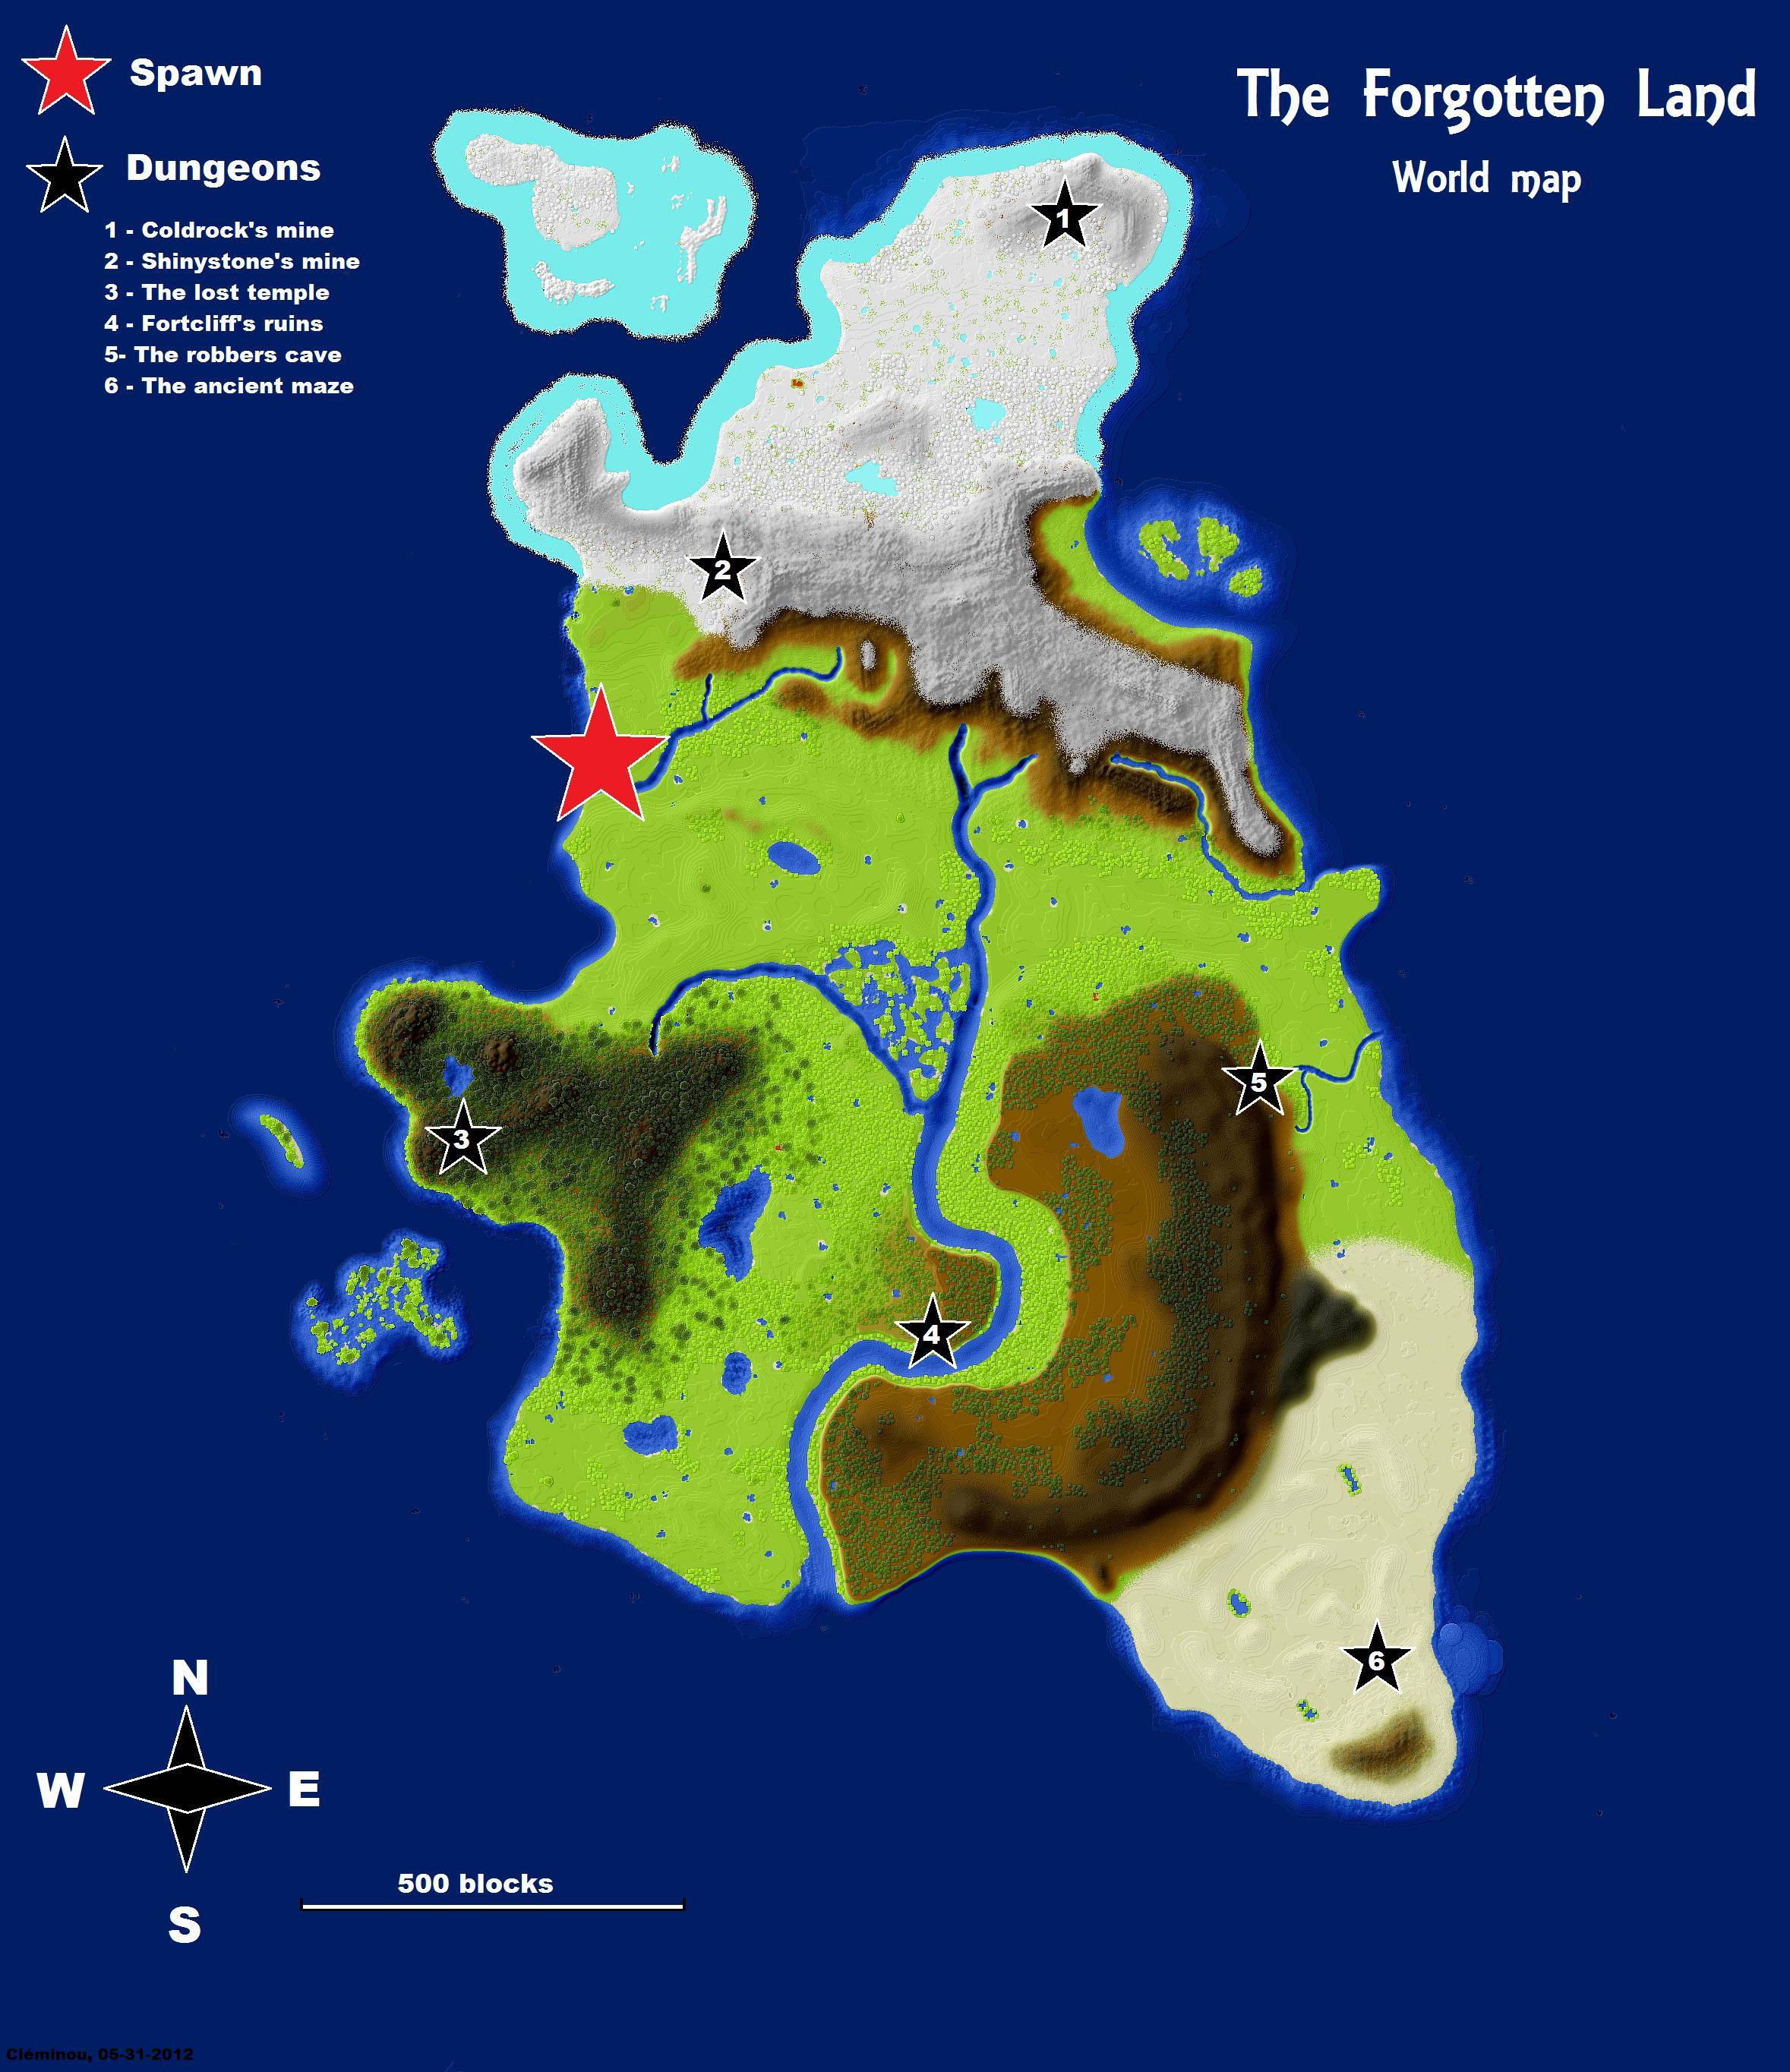 best minecraft survival maps 1.12.2